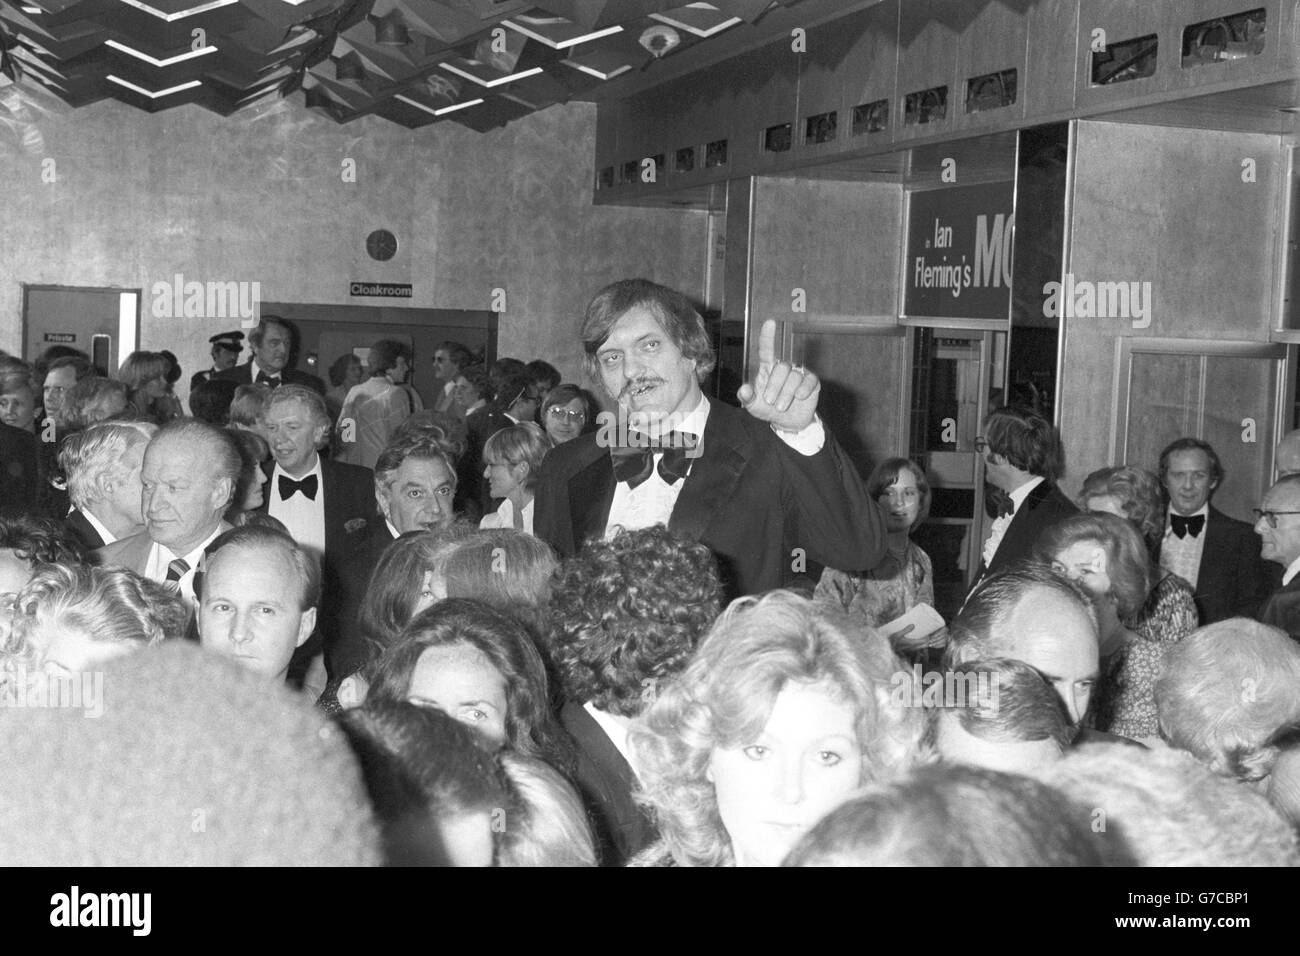 L'acteur américain Richard Kiel à la première mondiale de la Charité royale du film de James Bond Moonraker à l'Odeon Leicester Square.L'acteur 7ft 2' présente les mâchoires de villosités à denture d'acier. Banque D'Images